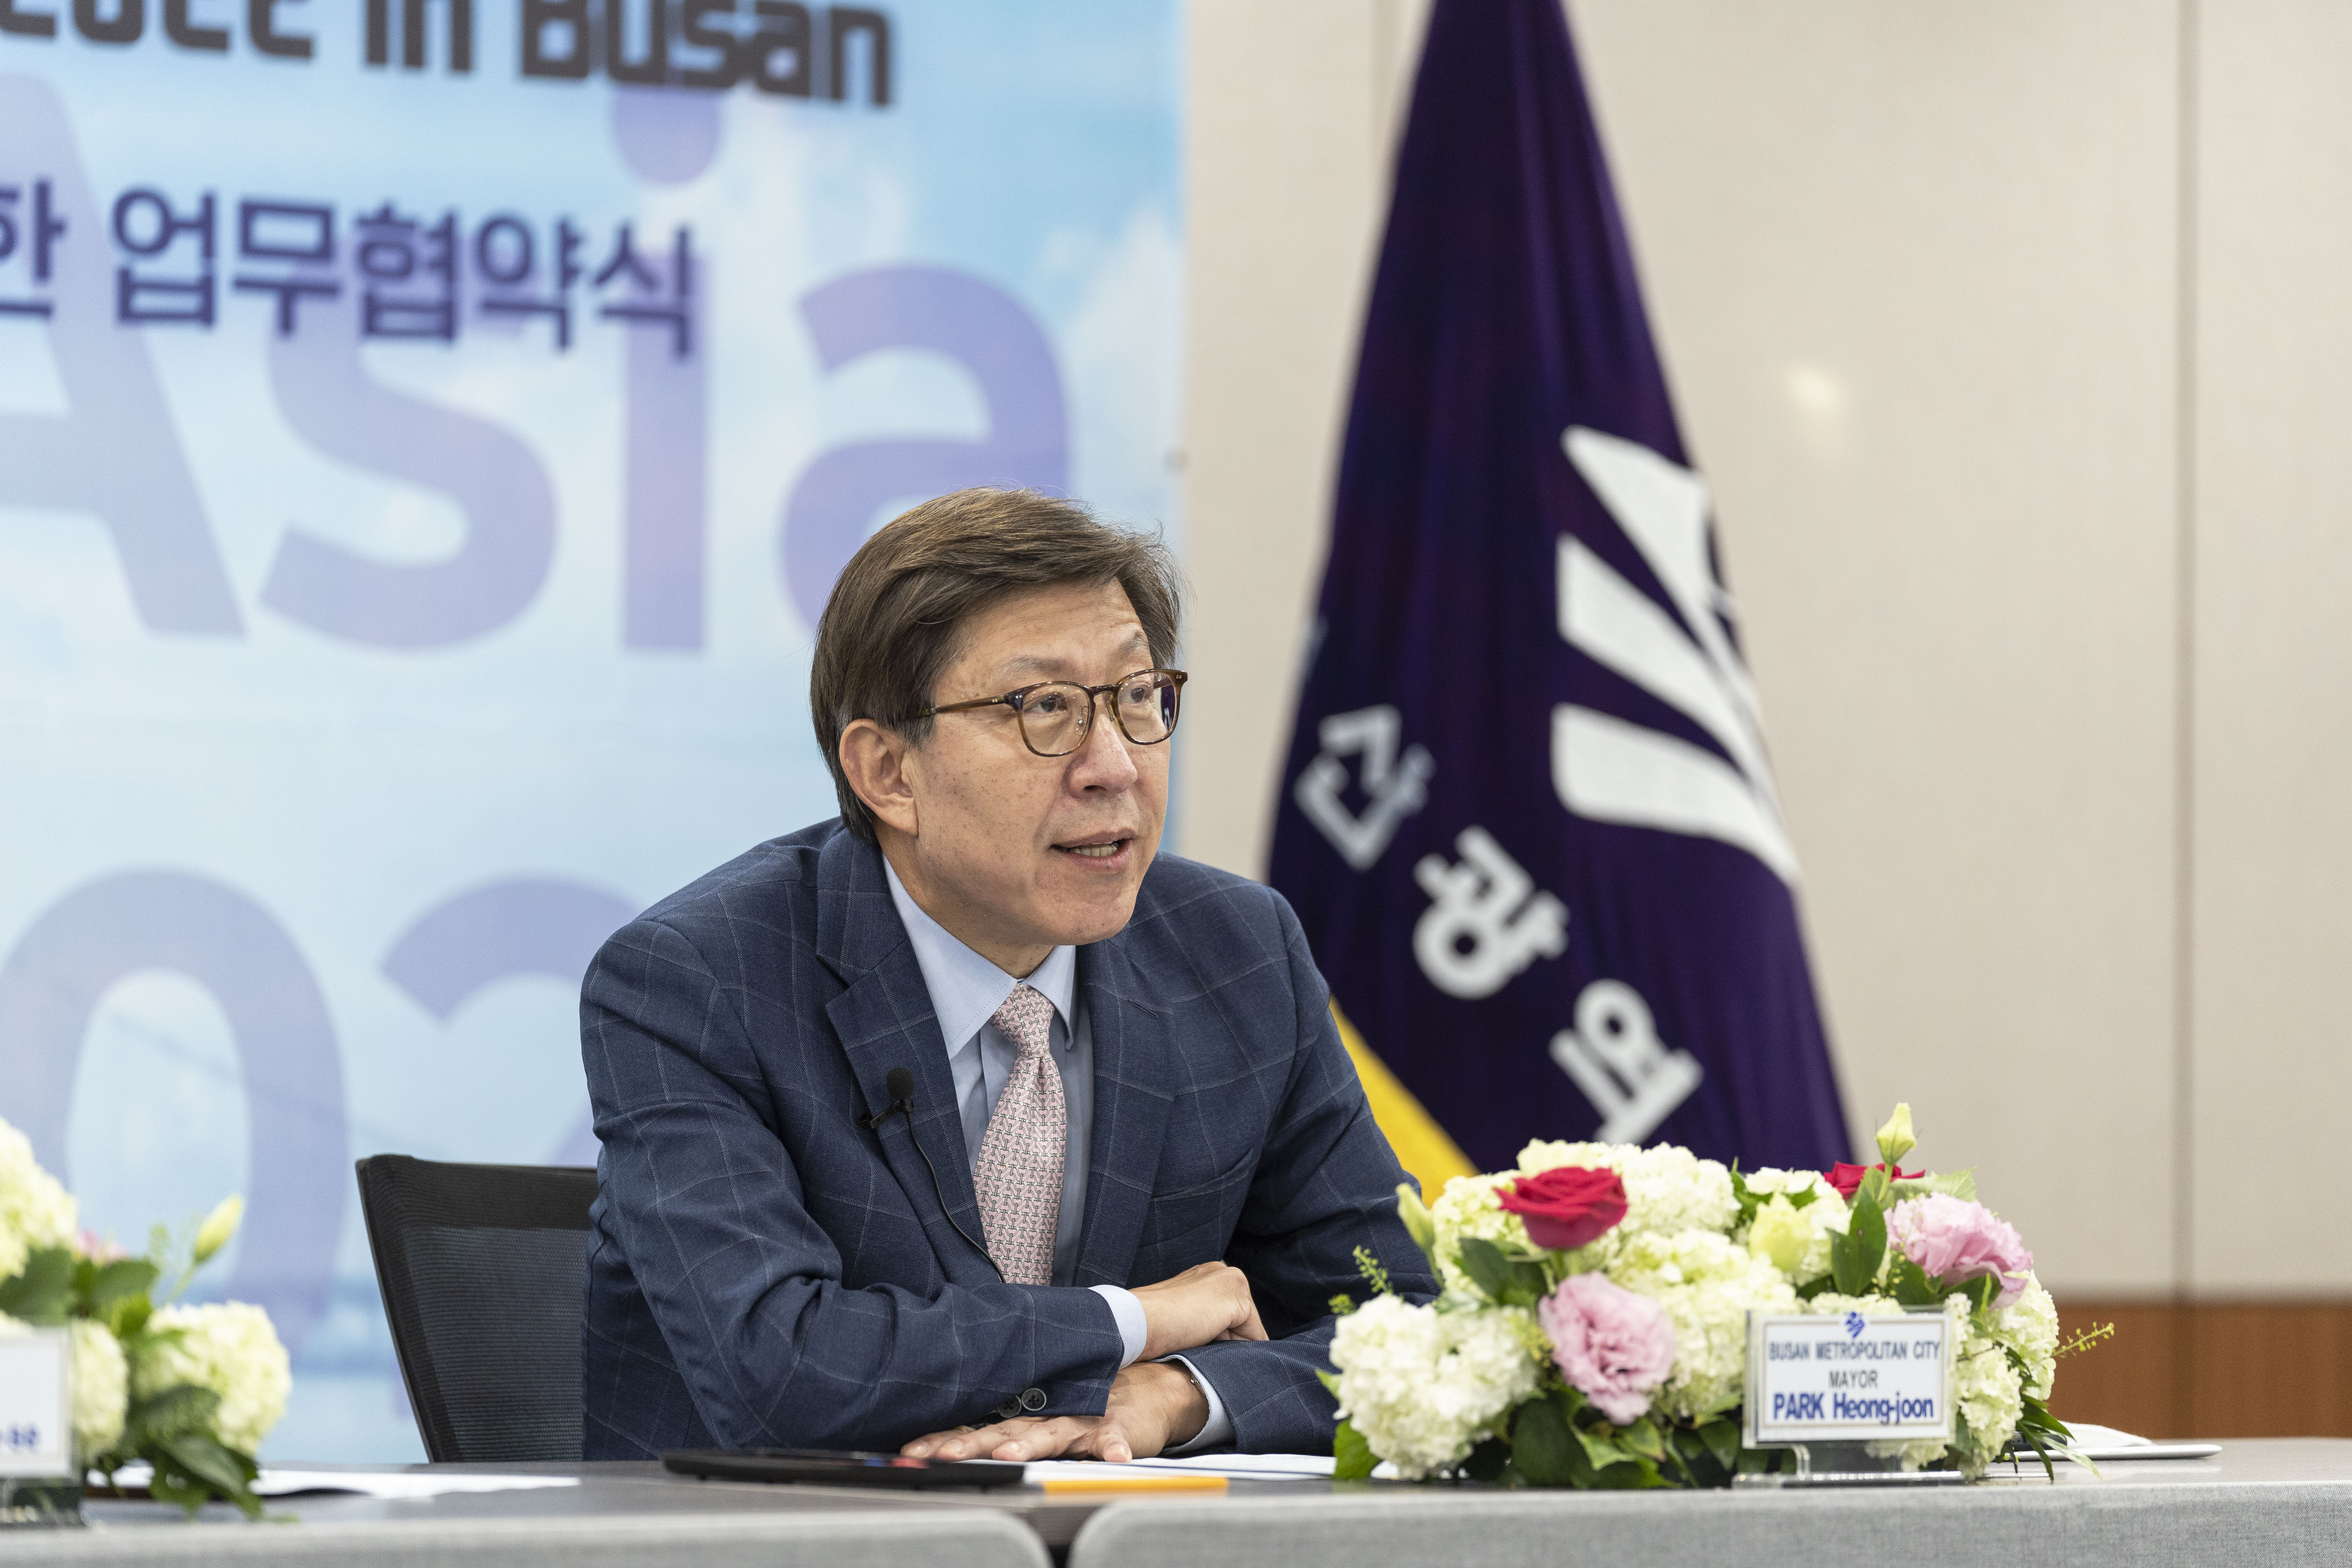 20220503 JUNCTION Asia 2022 부산 개최 업무협약 (영상회의실)  사진2